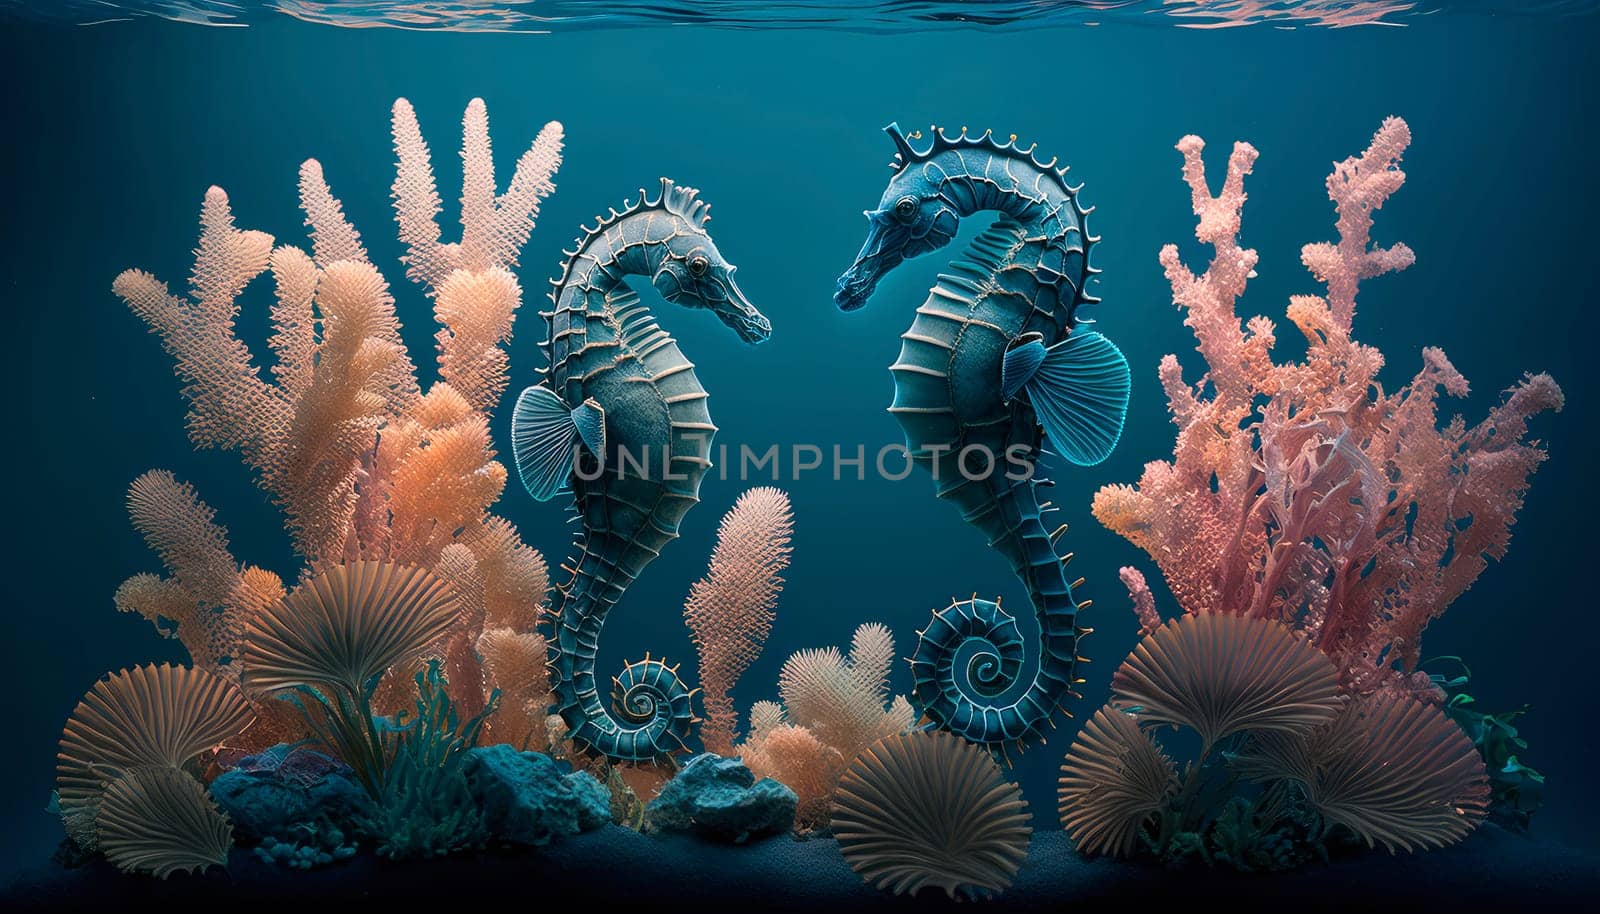 sea horses in the sea. by yanadjana